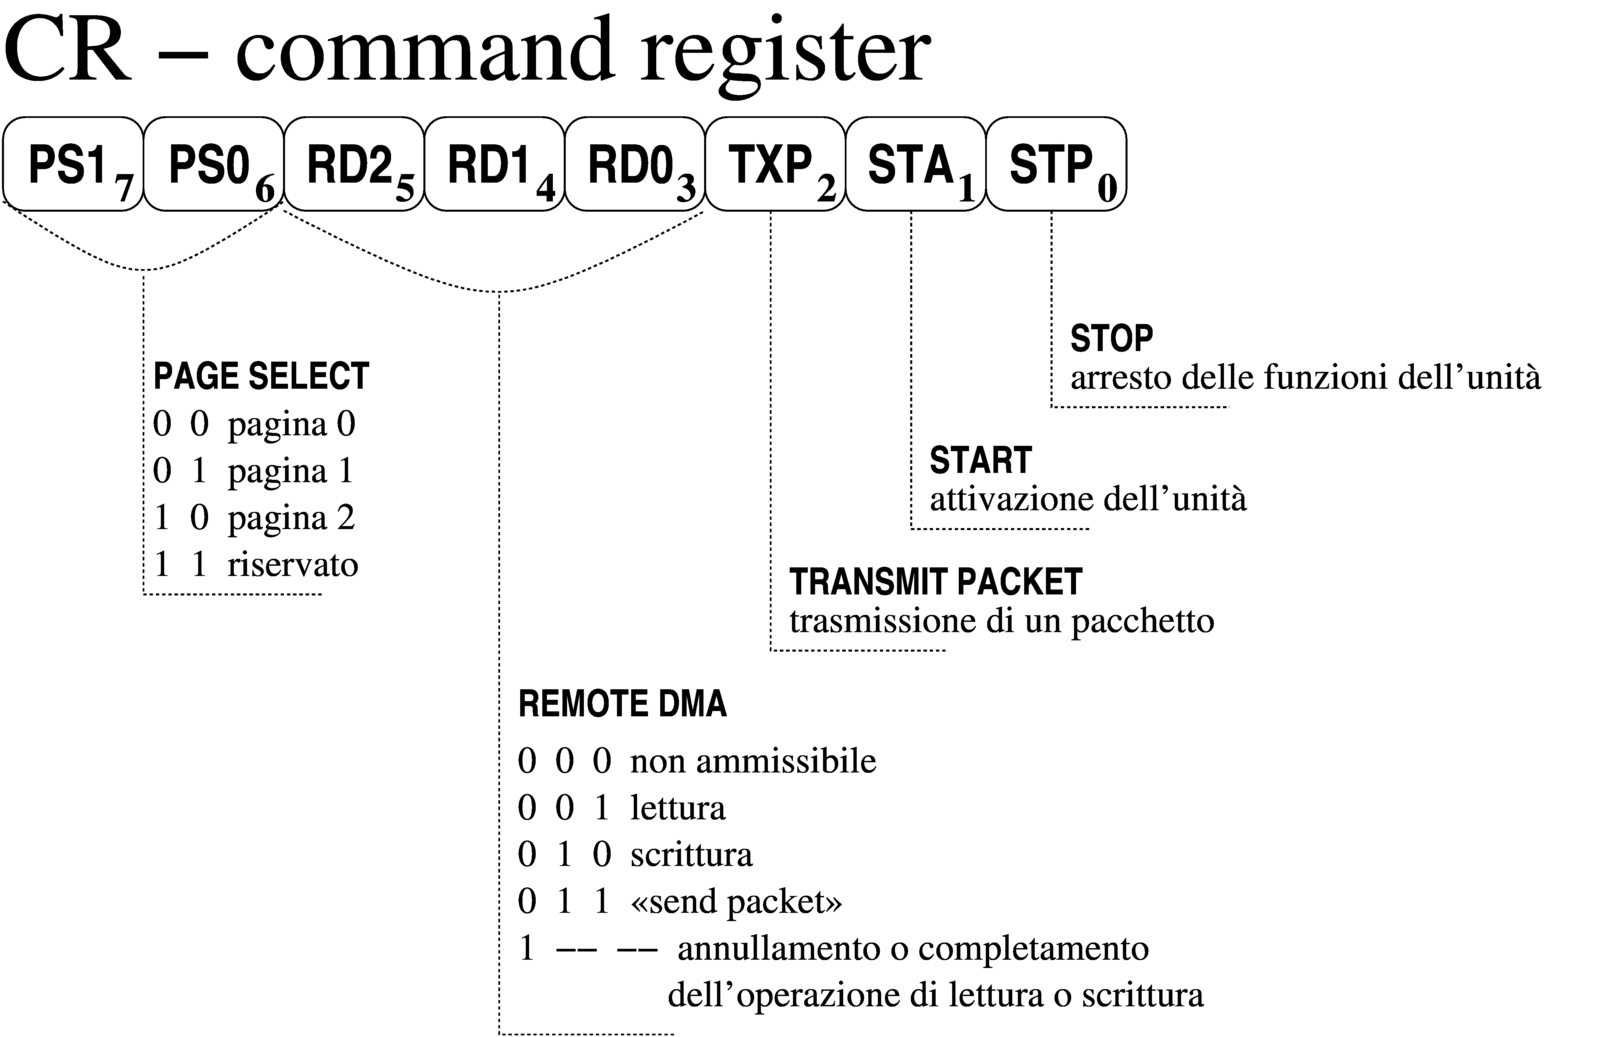 NE2000: cr, command register